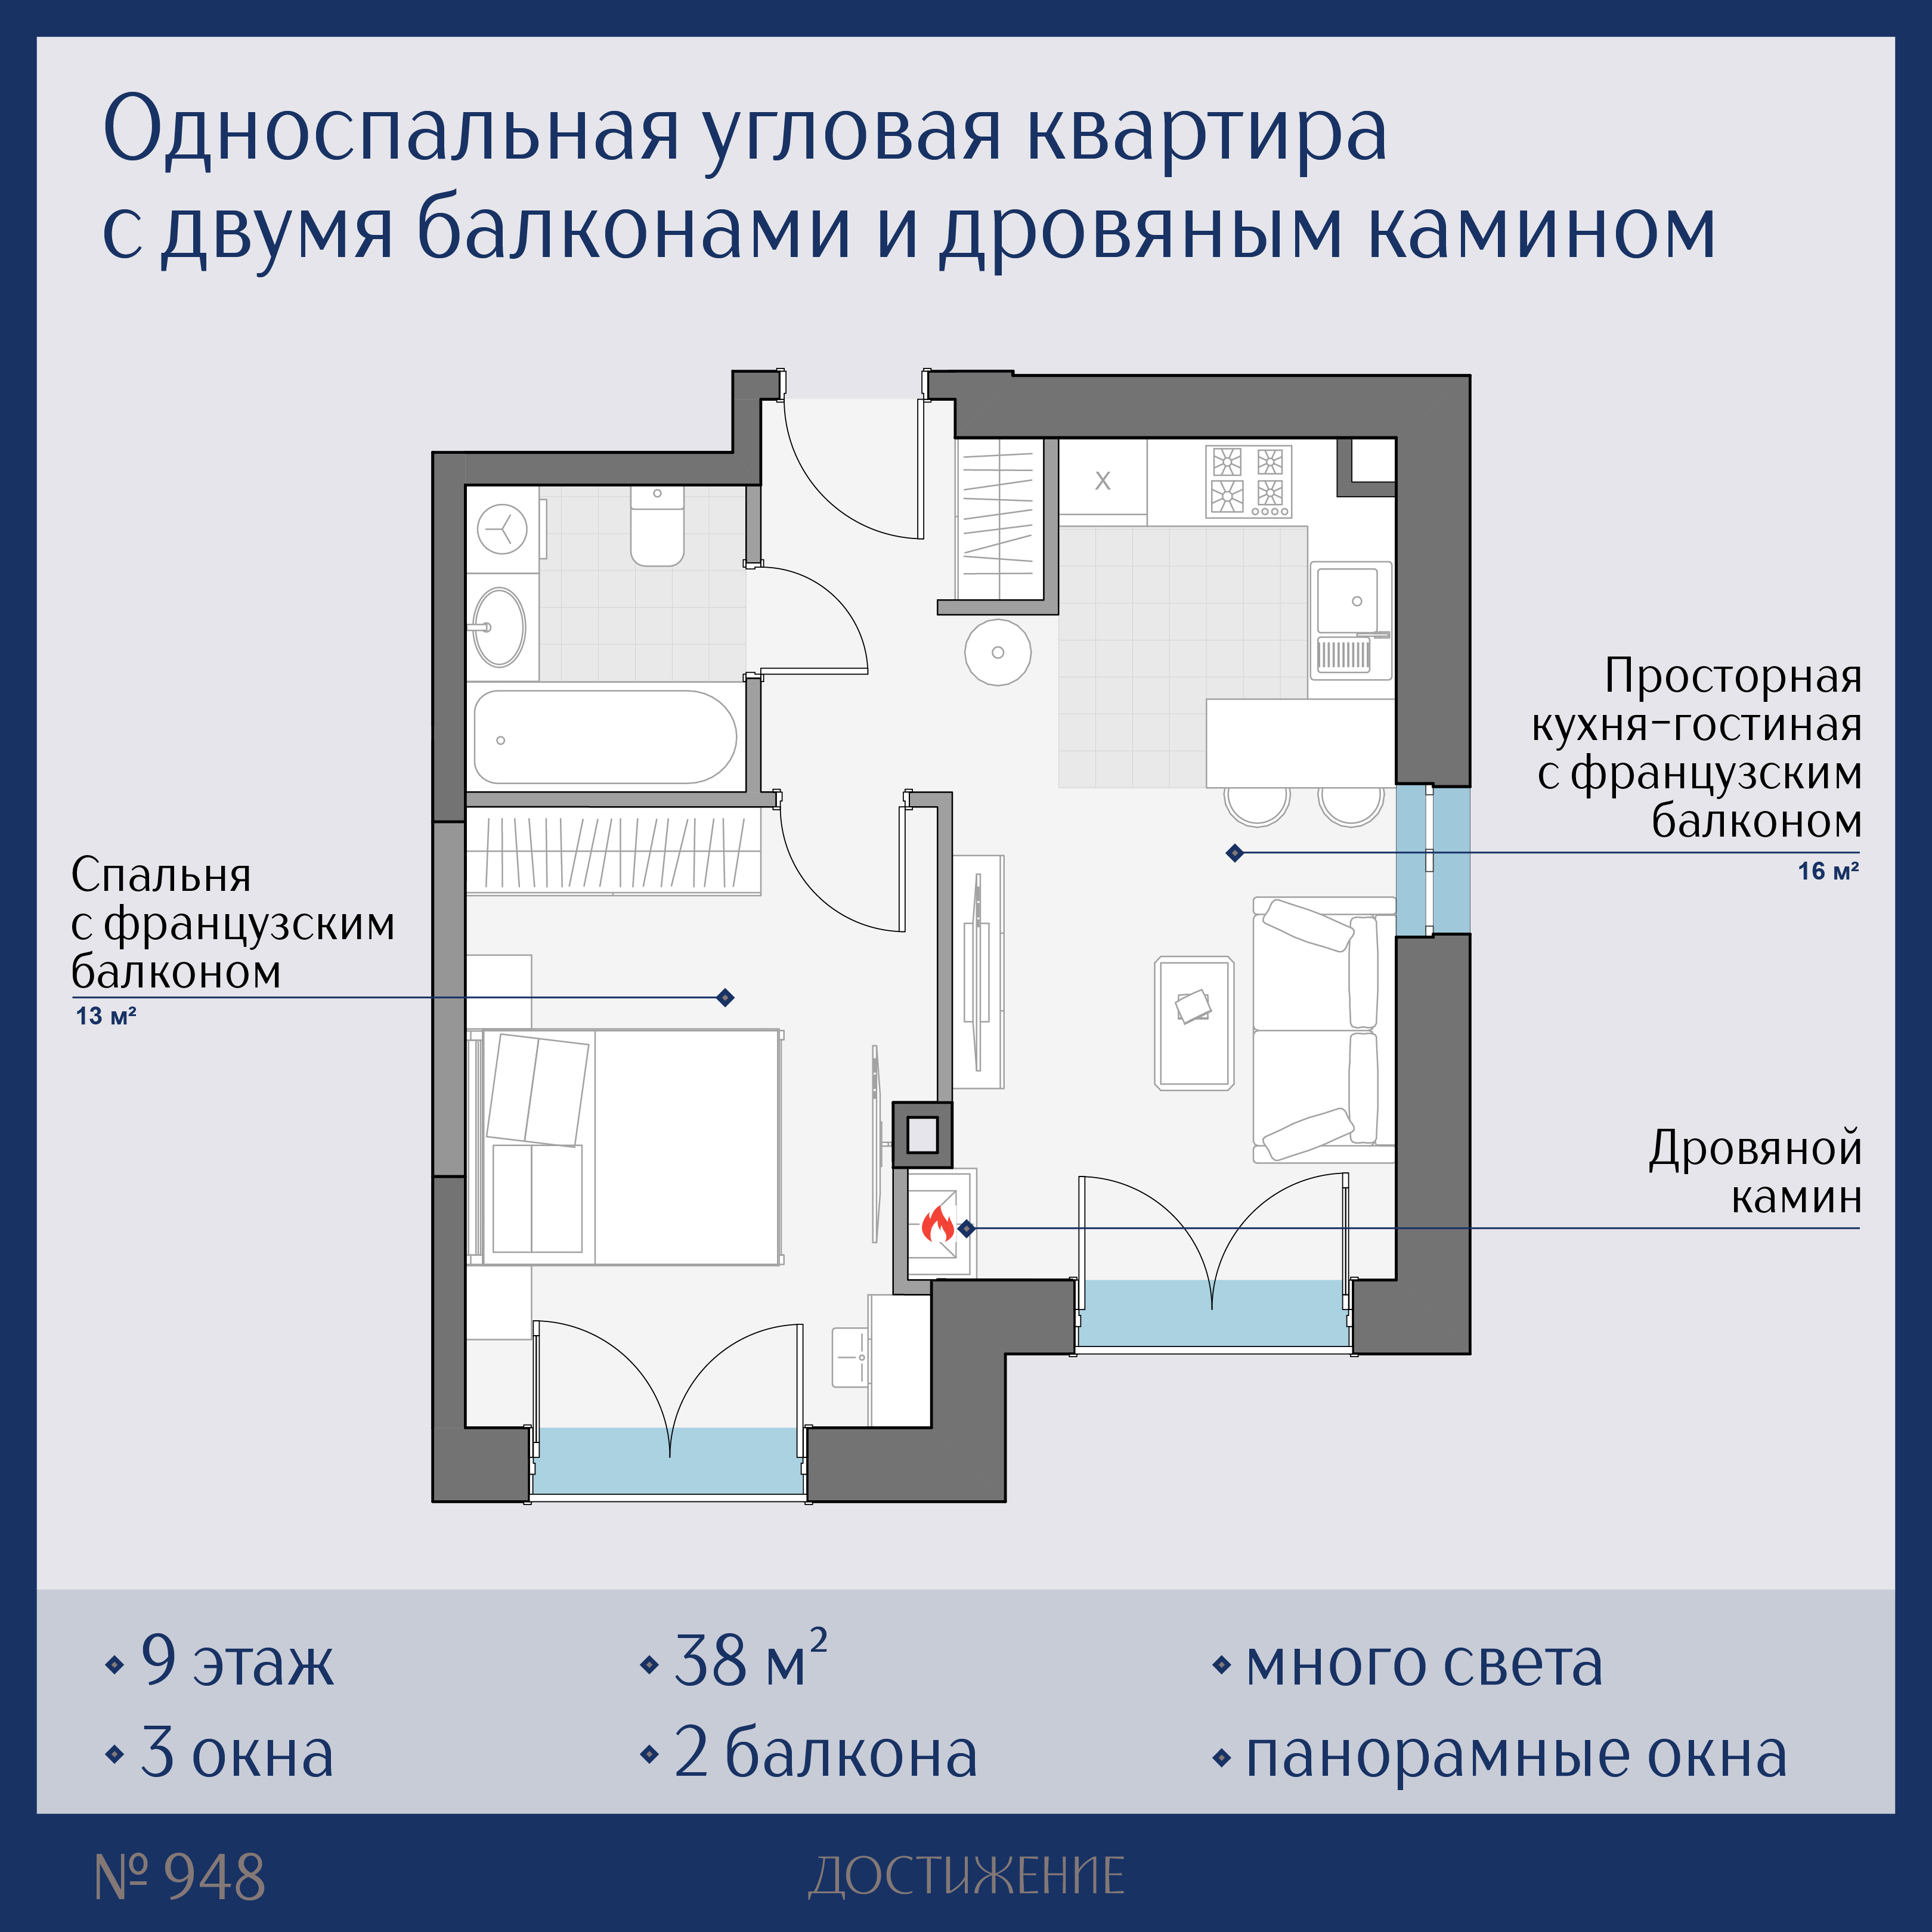 Sminex: односпальные квартиры с каминами продаются только в одном проекте Москвы